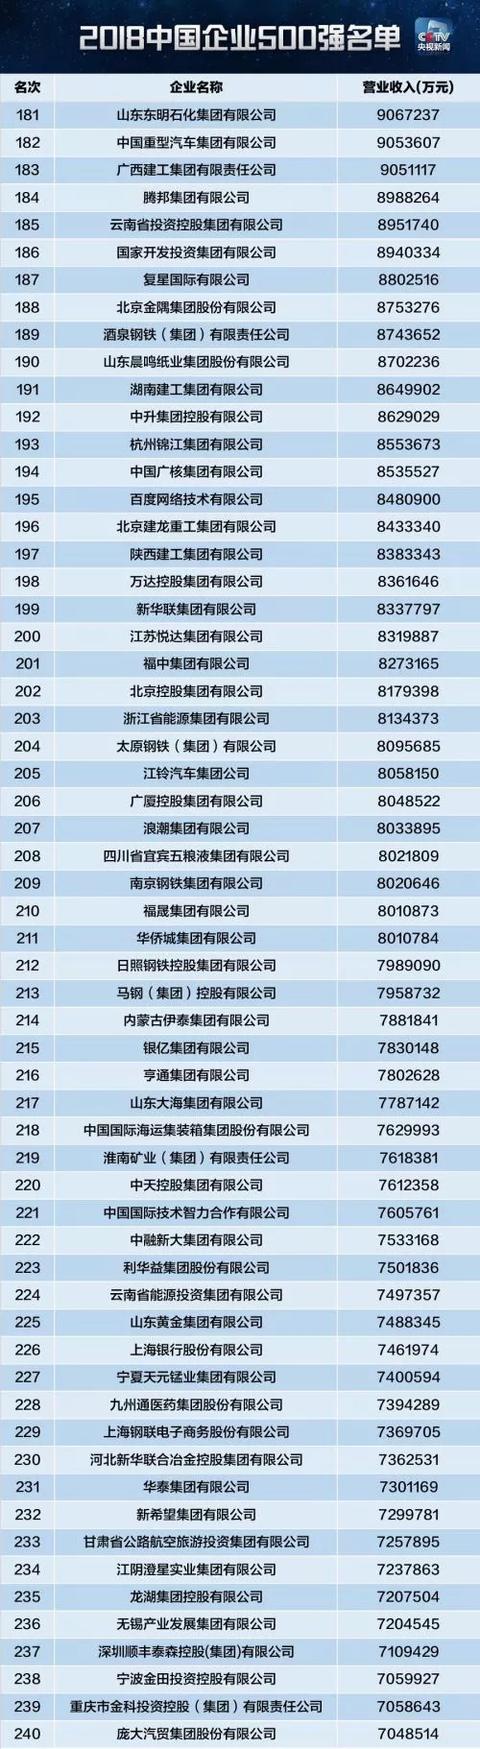 2018中国企业500强排行榜